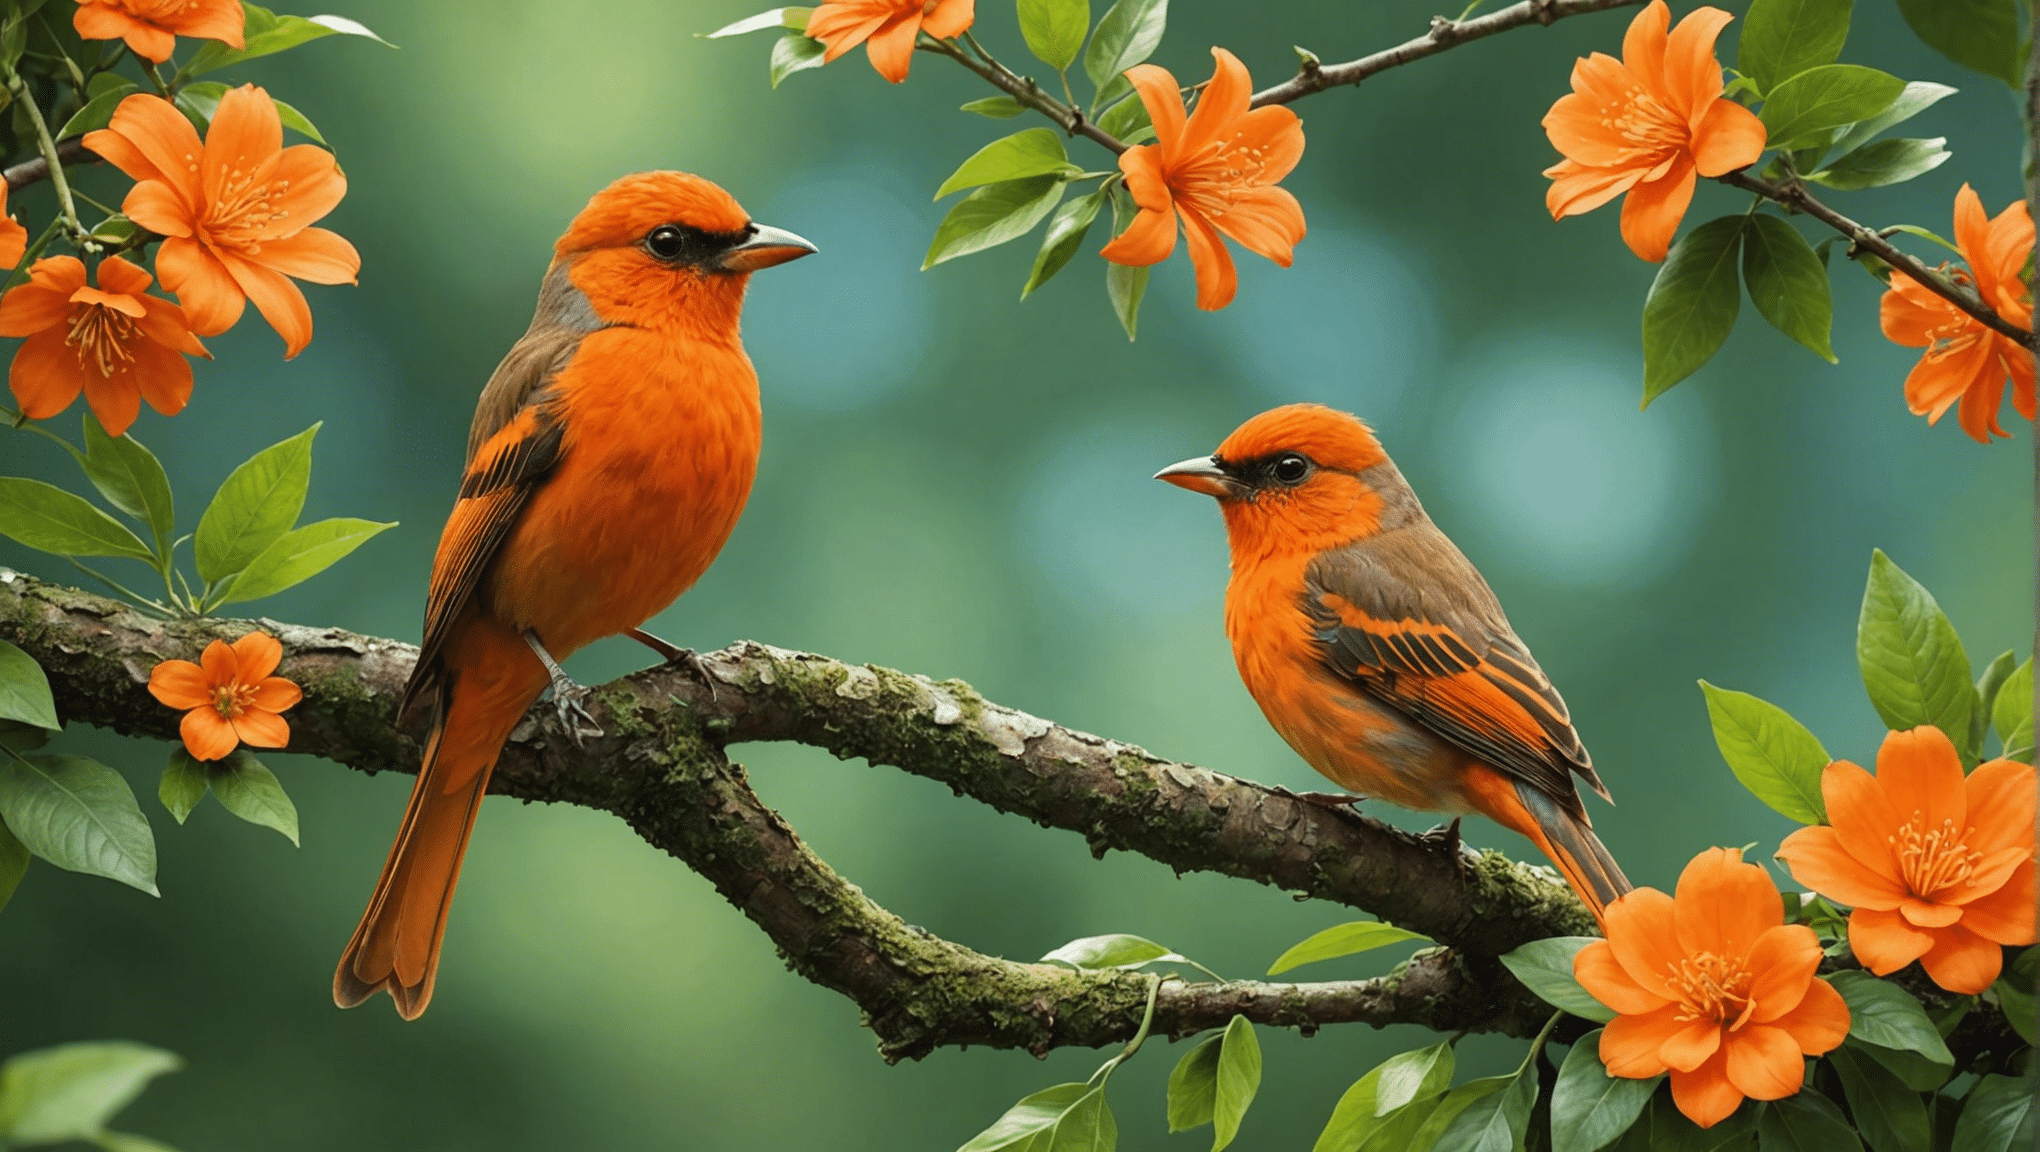 descubra a verdade sobre os pássaros laranja: eles são reais ou apenas um mito? obtenha os fatos e descubra a realidade por trás do mistério do pássaro laranja.